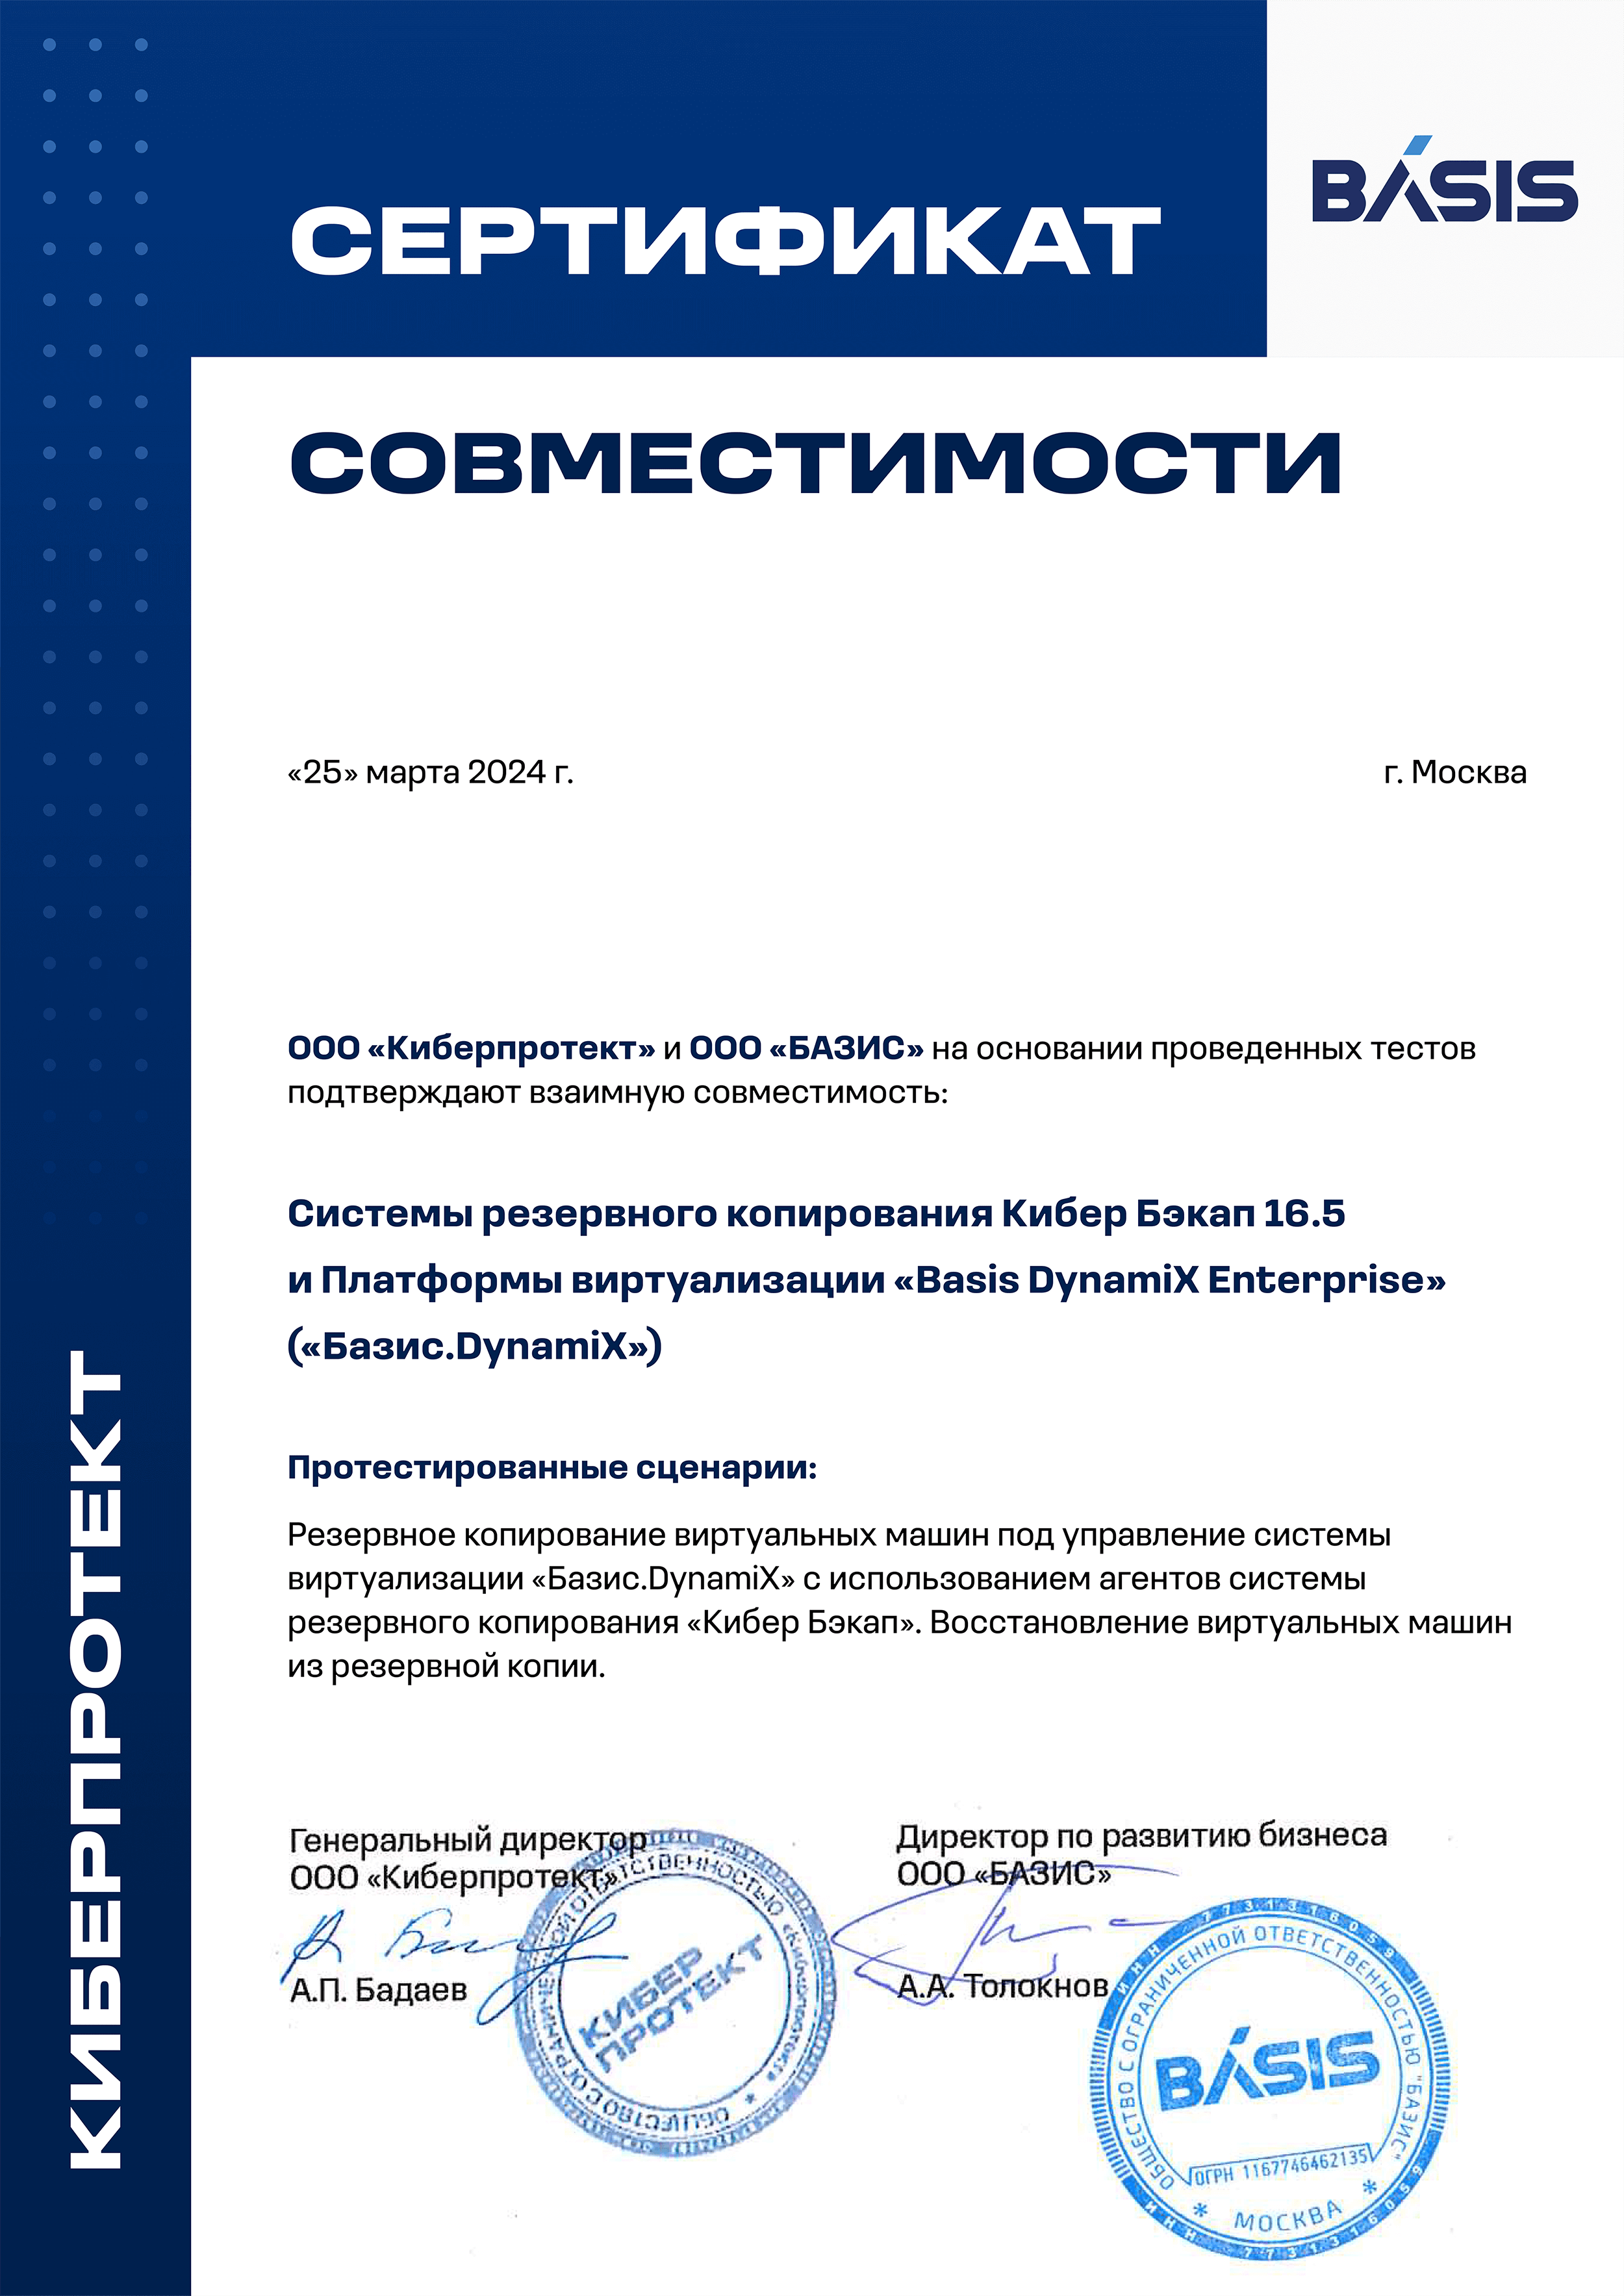 Basis certificate